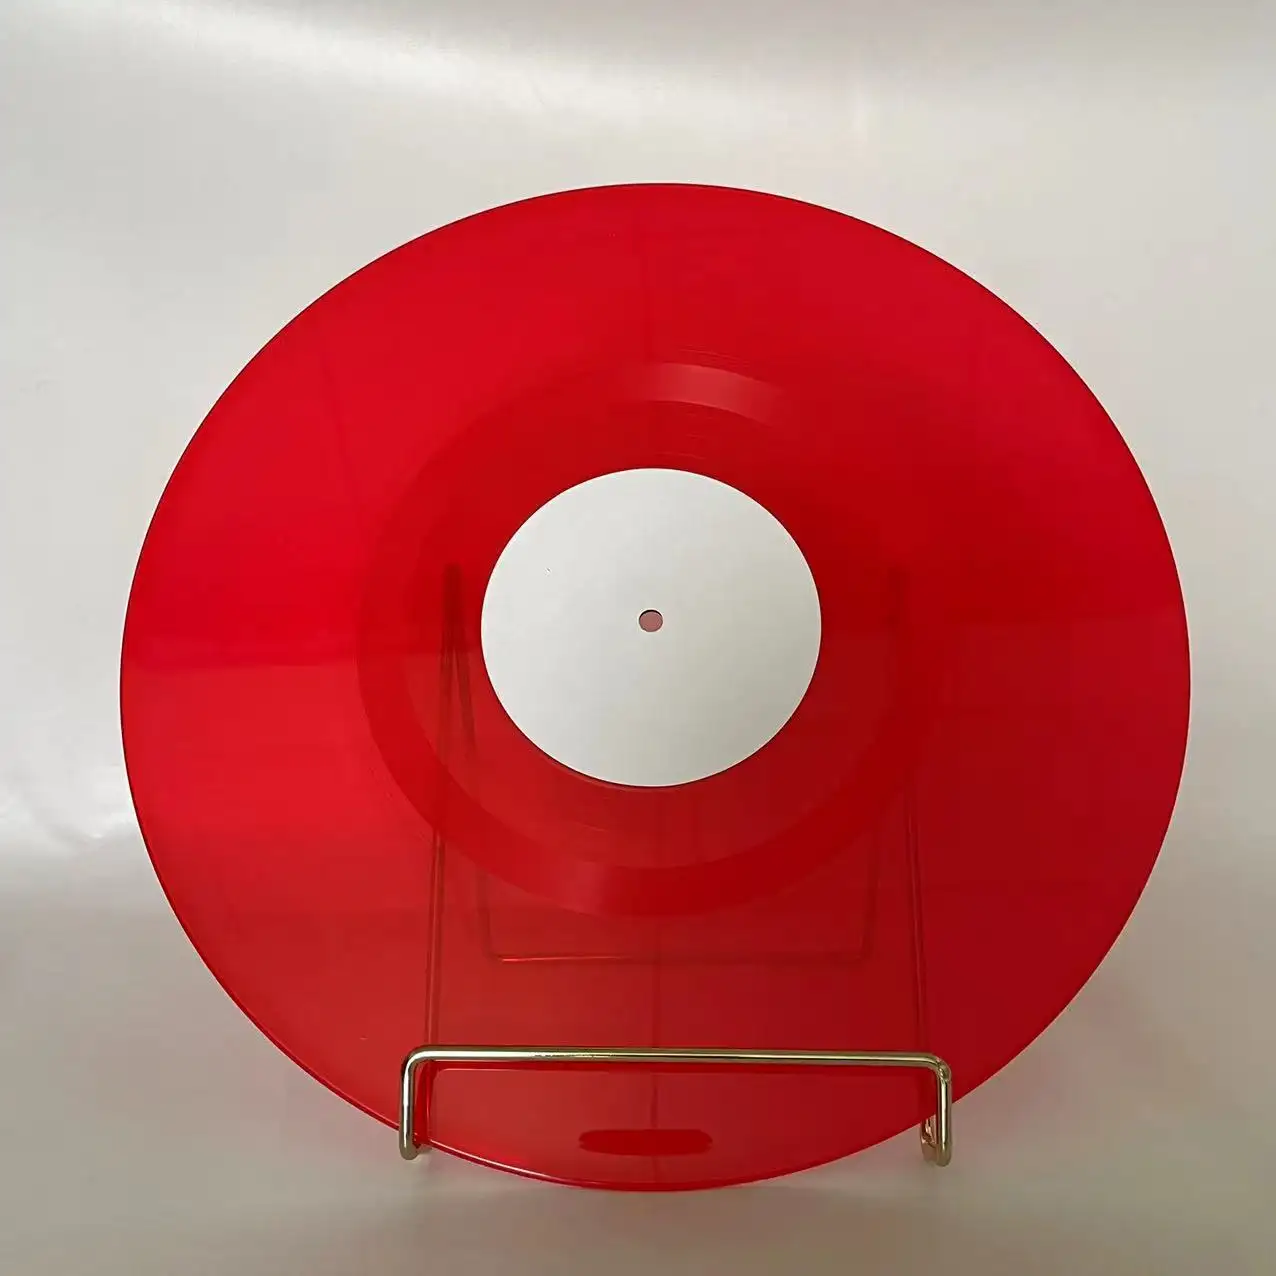 Üretici yüksek kalite özel 12 "180 gram müzik diski vinil plak çalar LP presleme kırmızı renk vinil kayıt